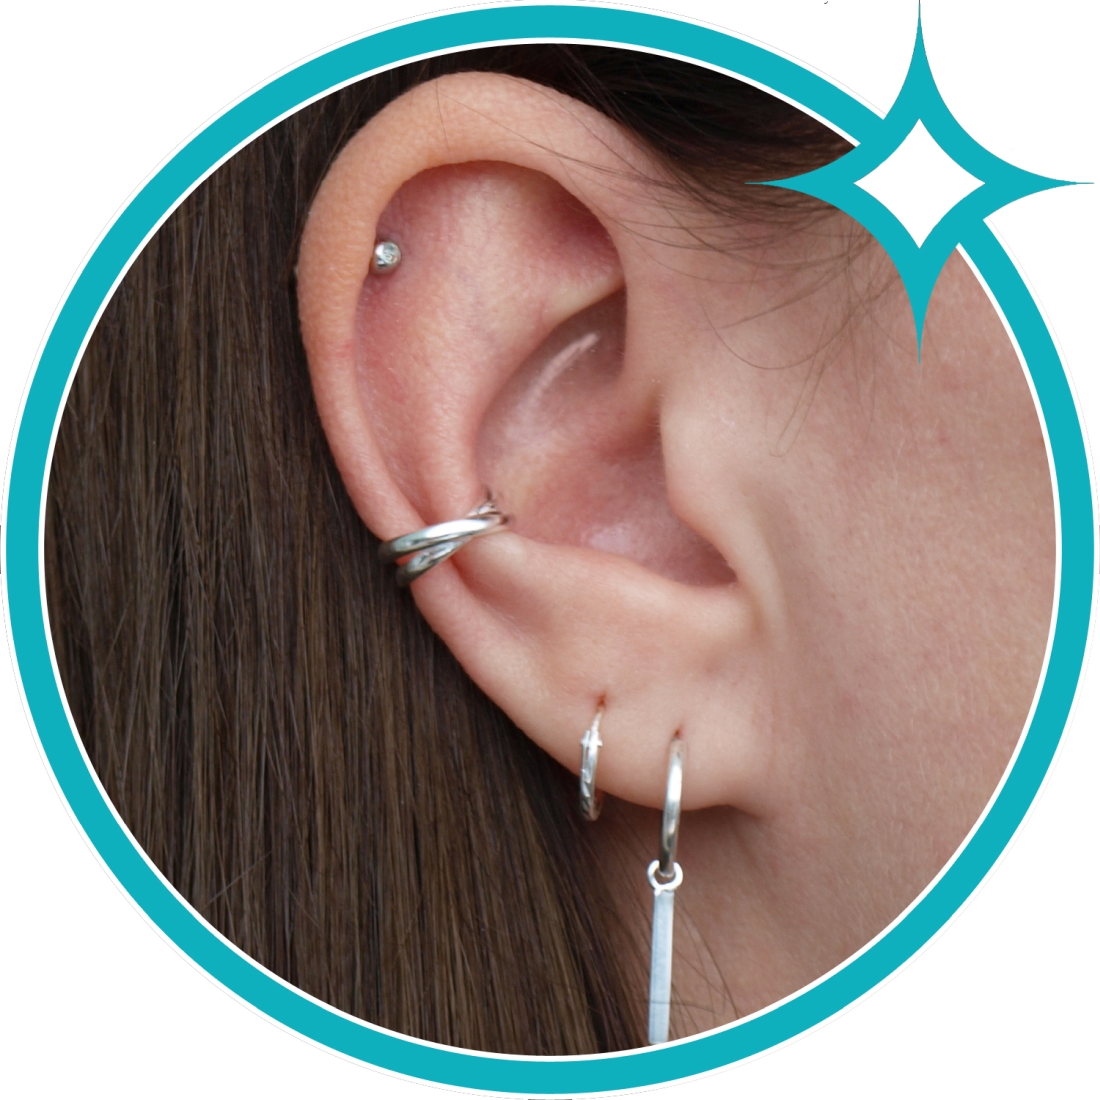 Ear cuff zilver dubbele band gekruist EIP01-01-00501 8720514750254 oor